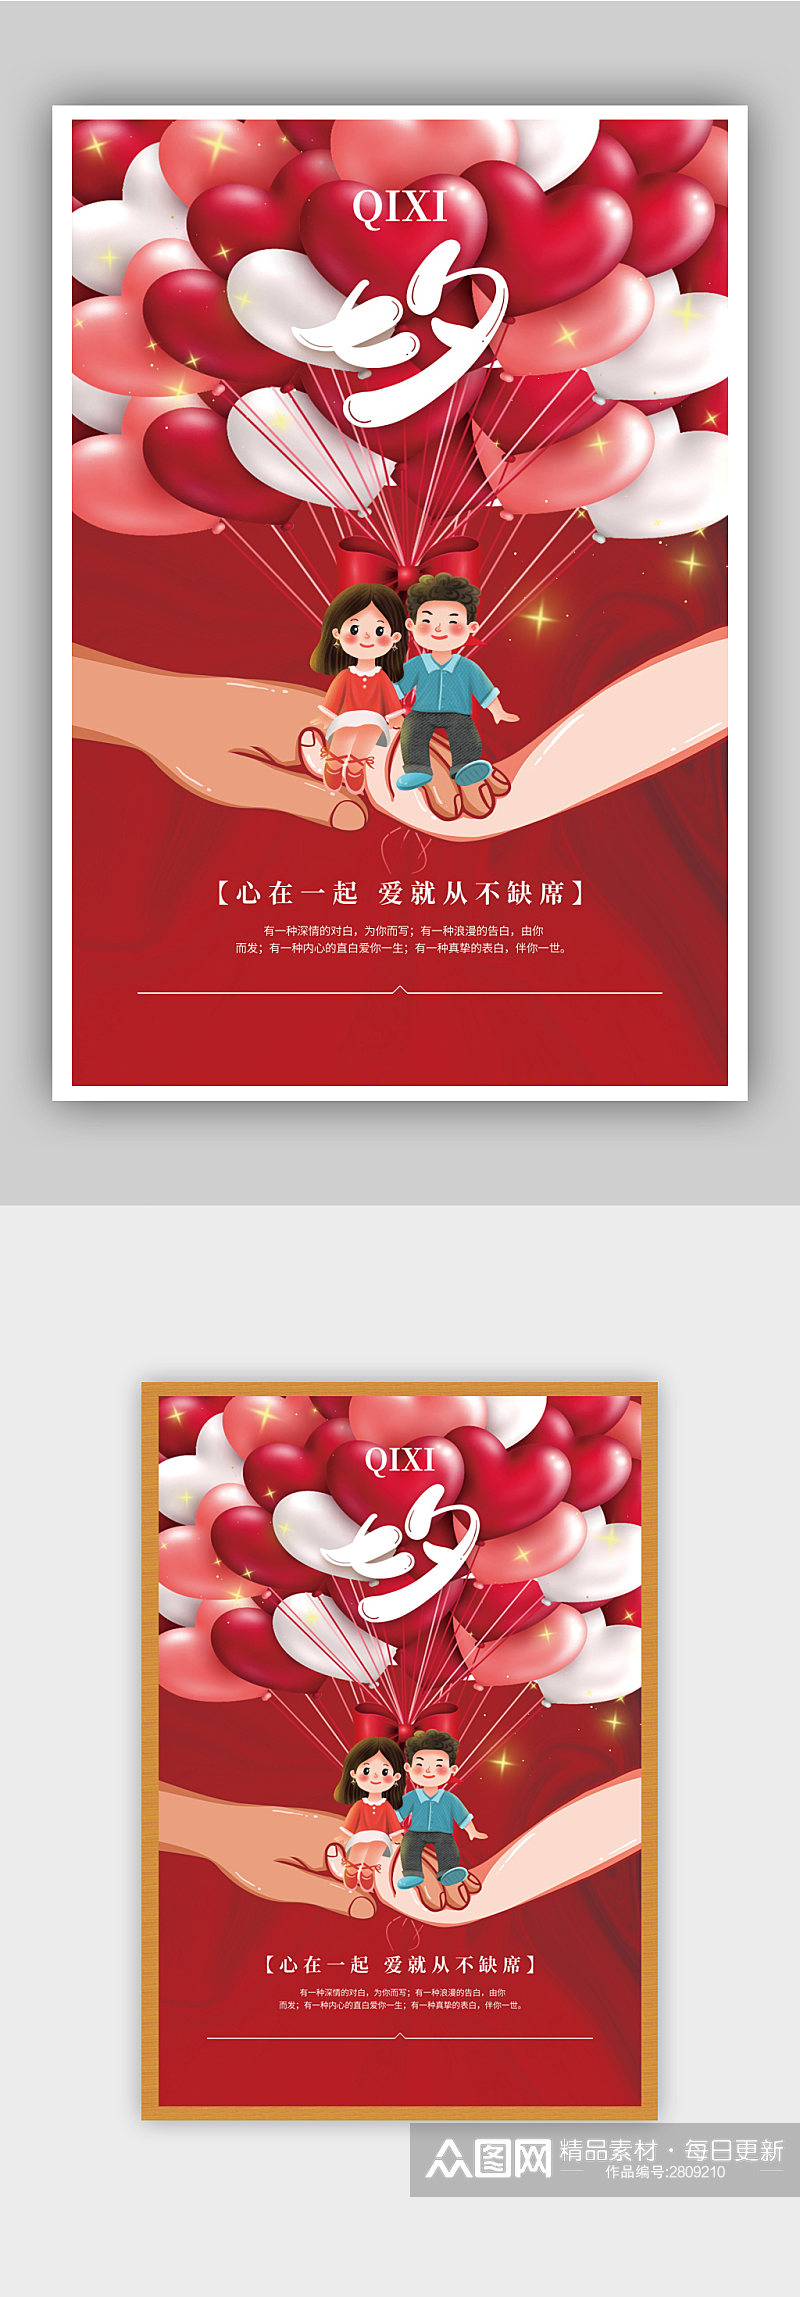 爱在一起浪漫七夕节节日海报素材